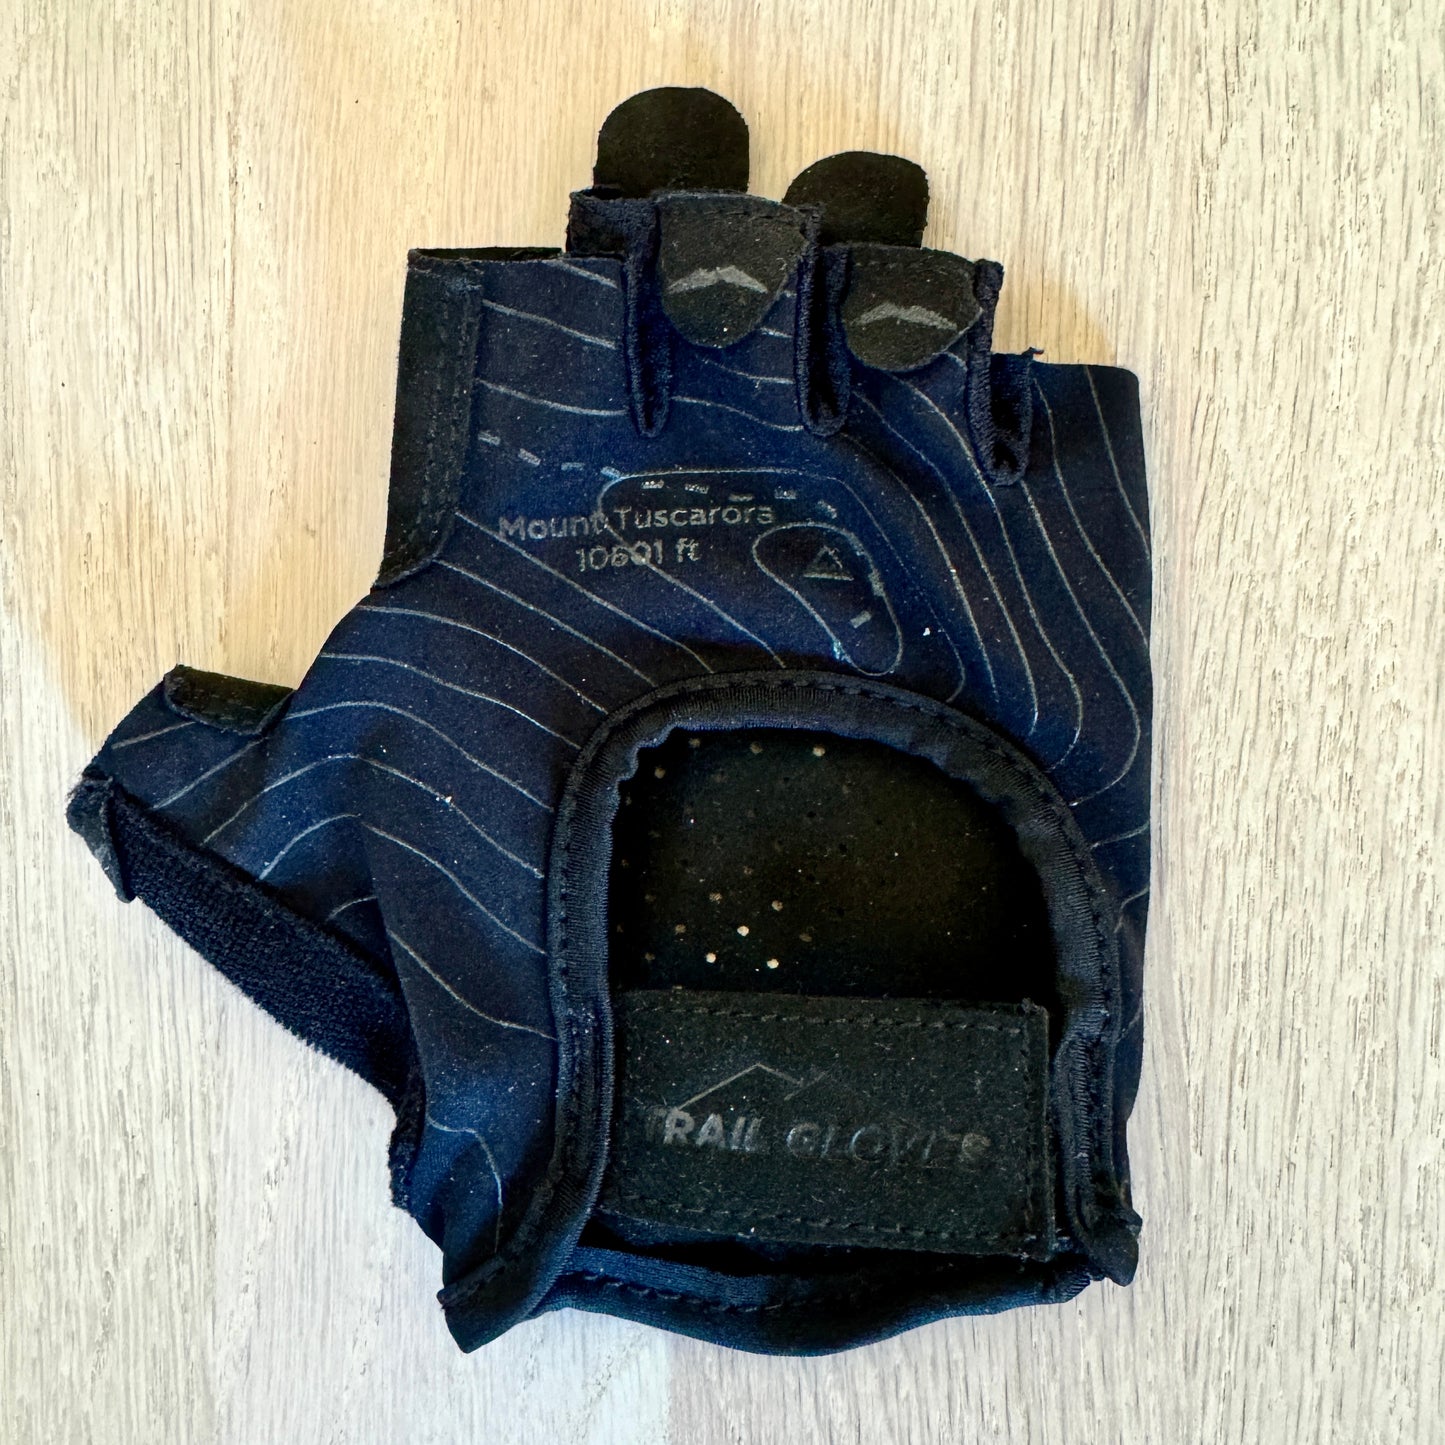 Trail Gloves - Fingerless Adventure Gloves